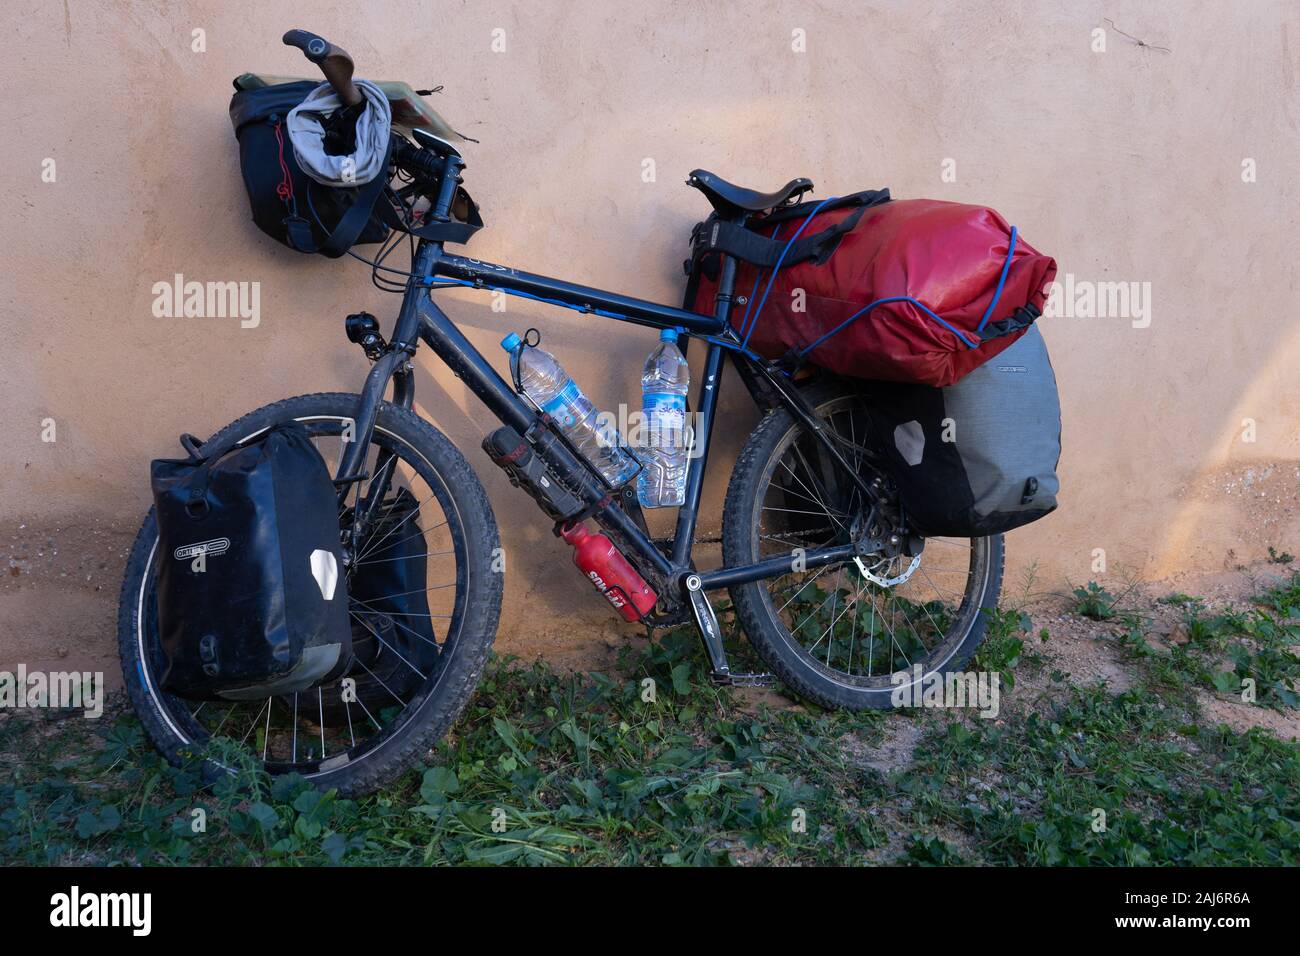 Un vélo de voyage, entièrement chargé, appuyé contre un mur Photo Stock -  Alamy